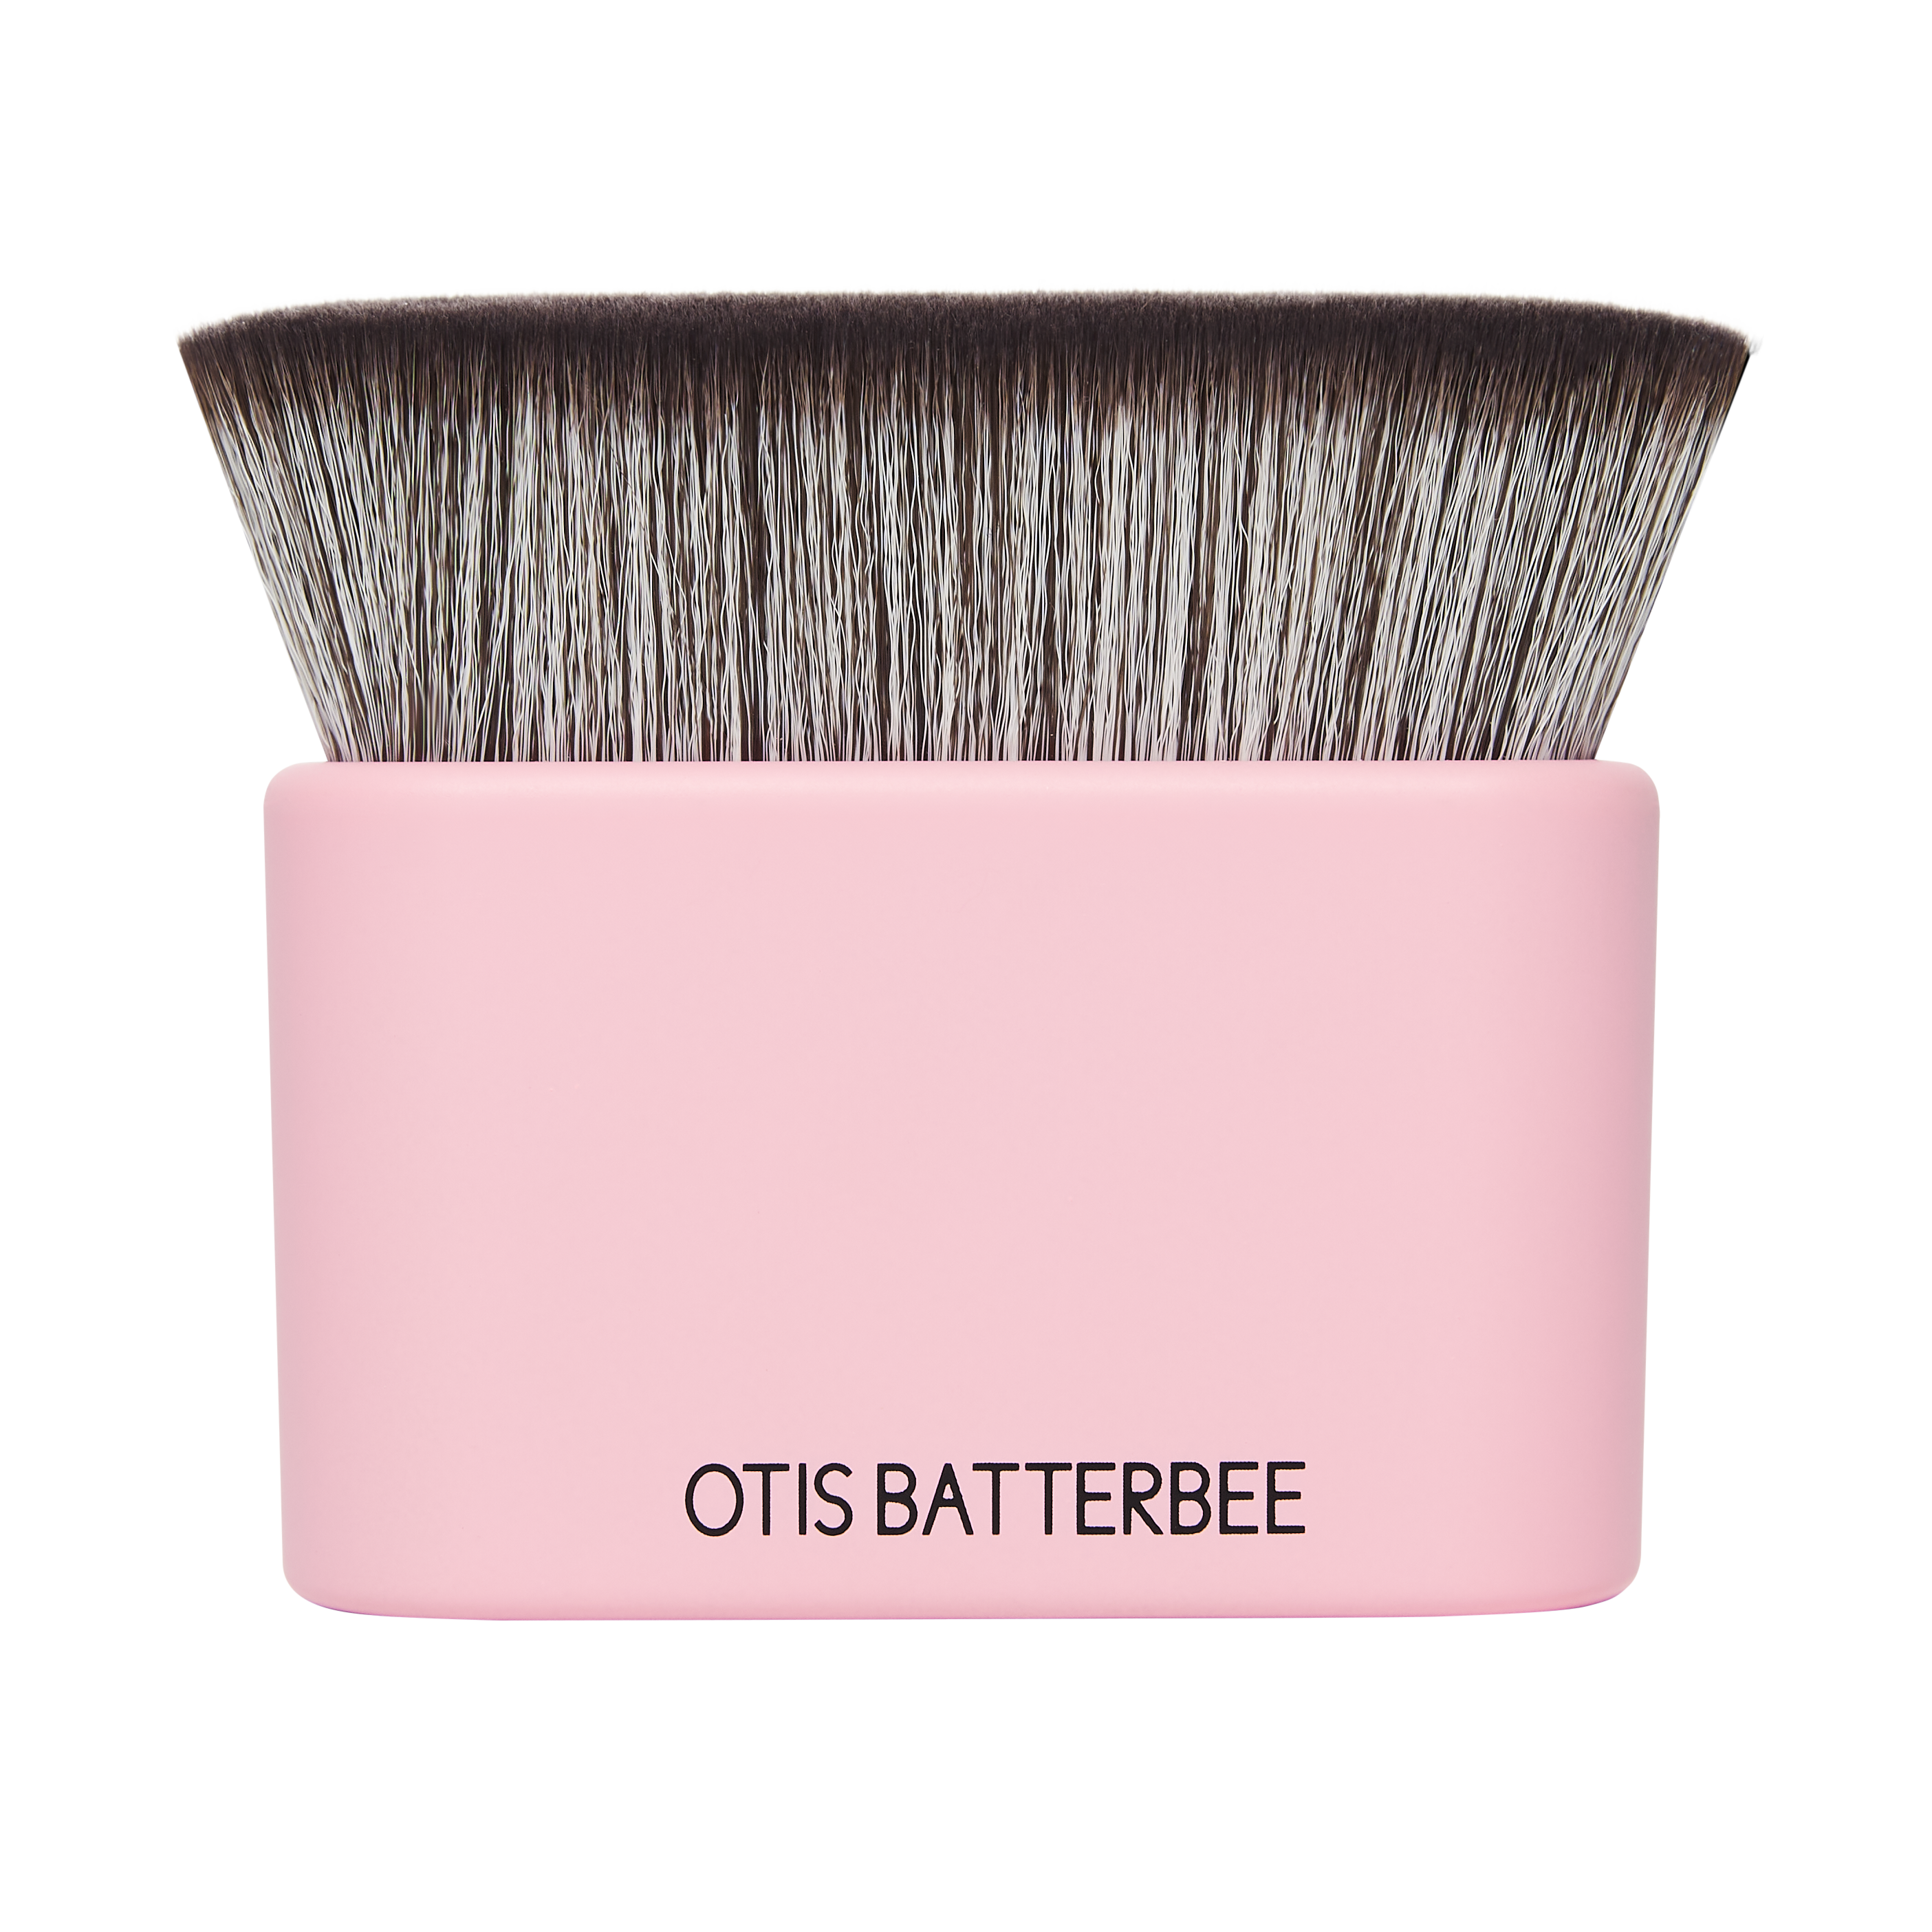 Otis Batterbee - Body and Face Makeup Brush Pink